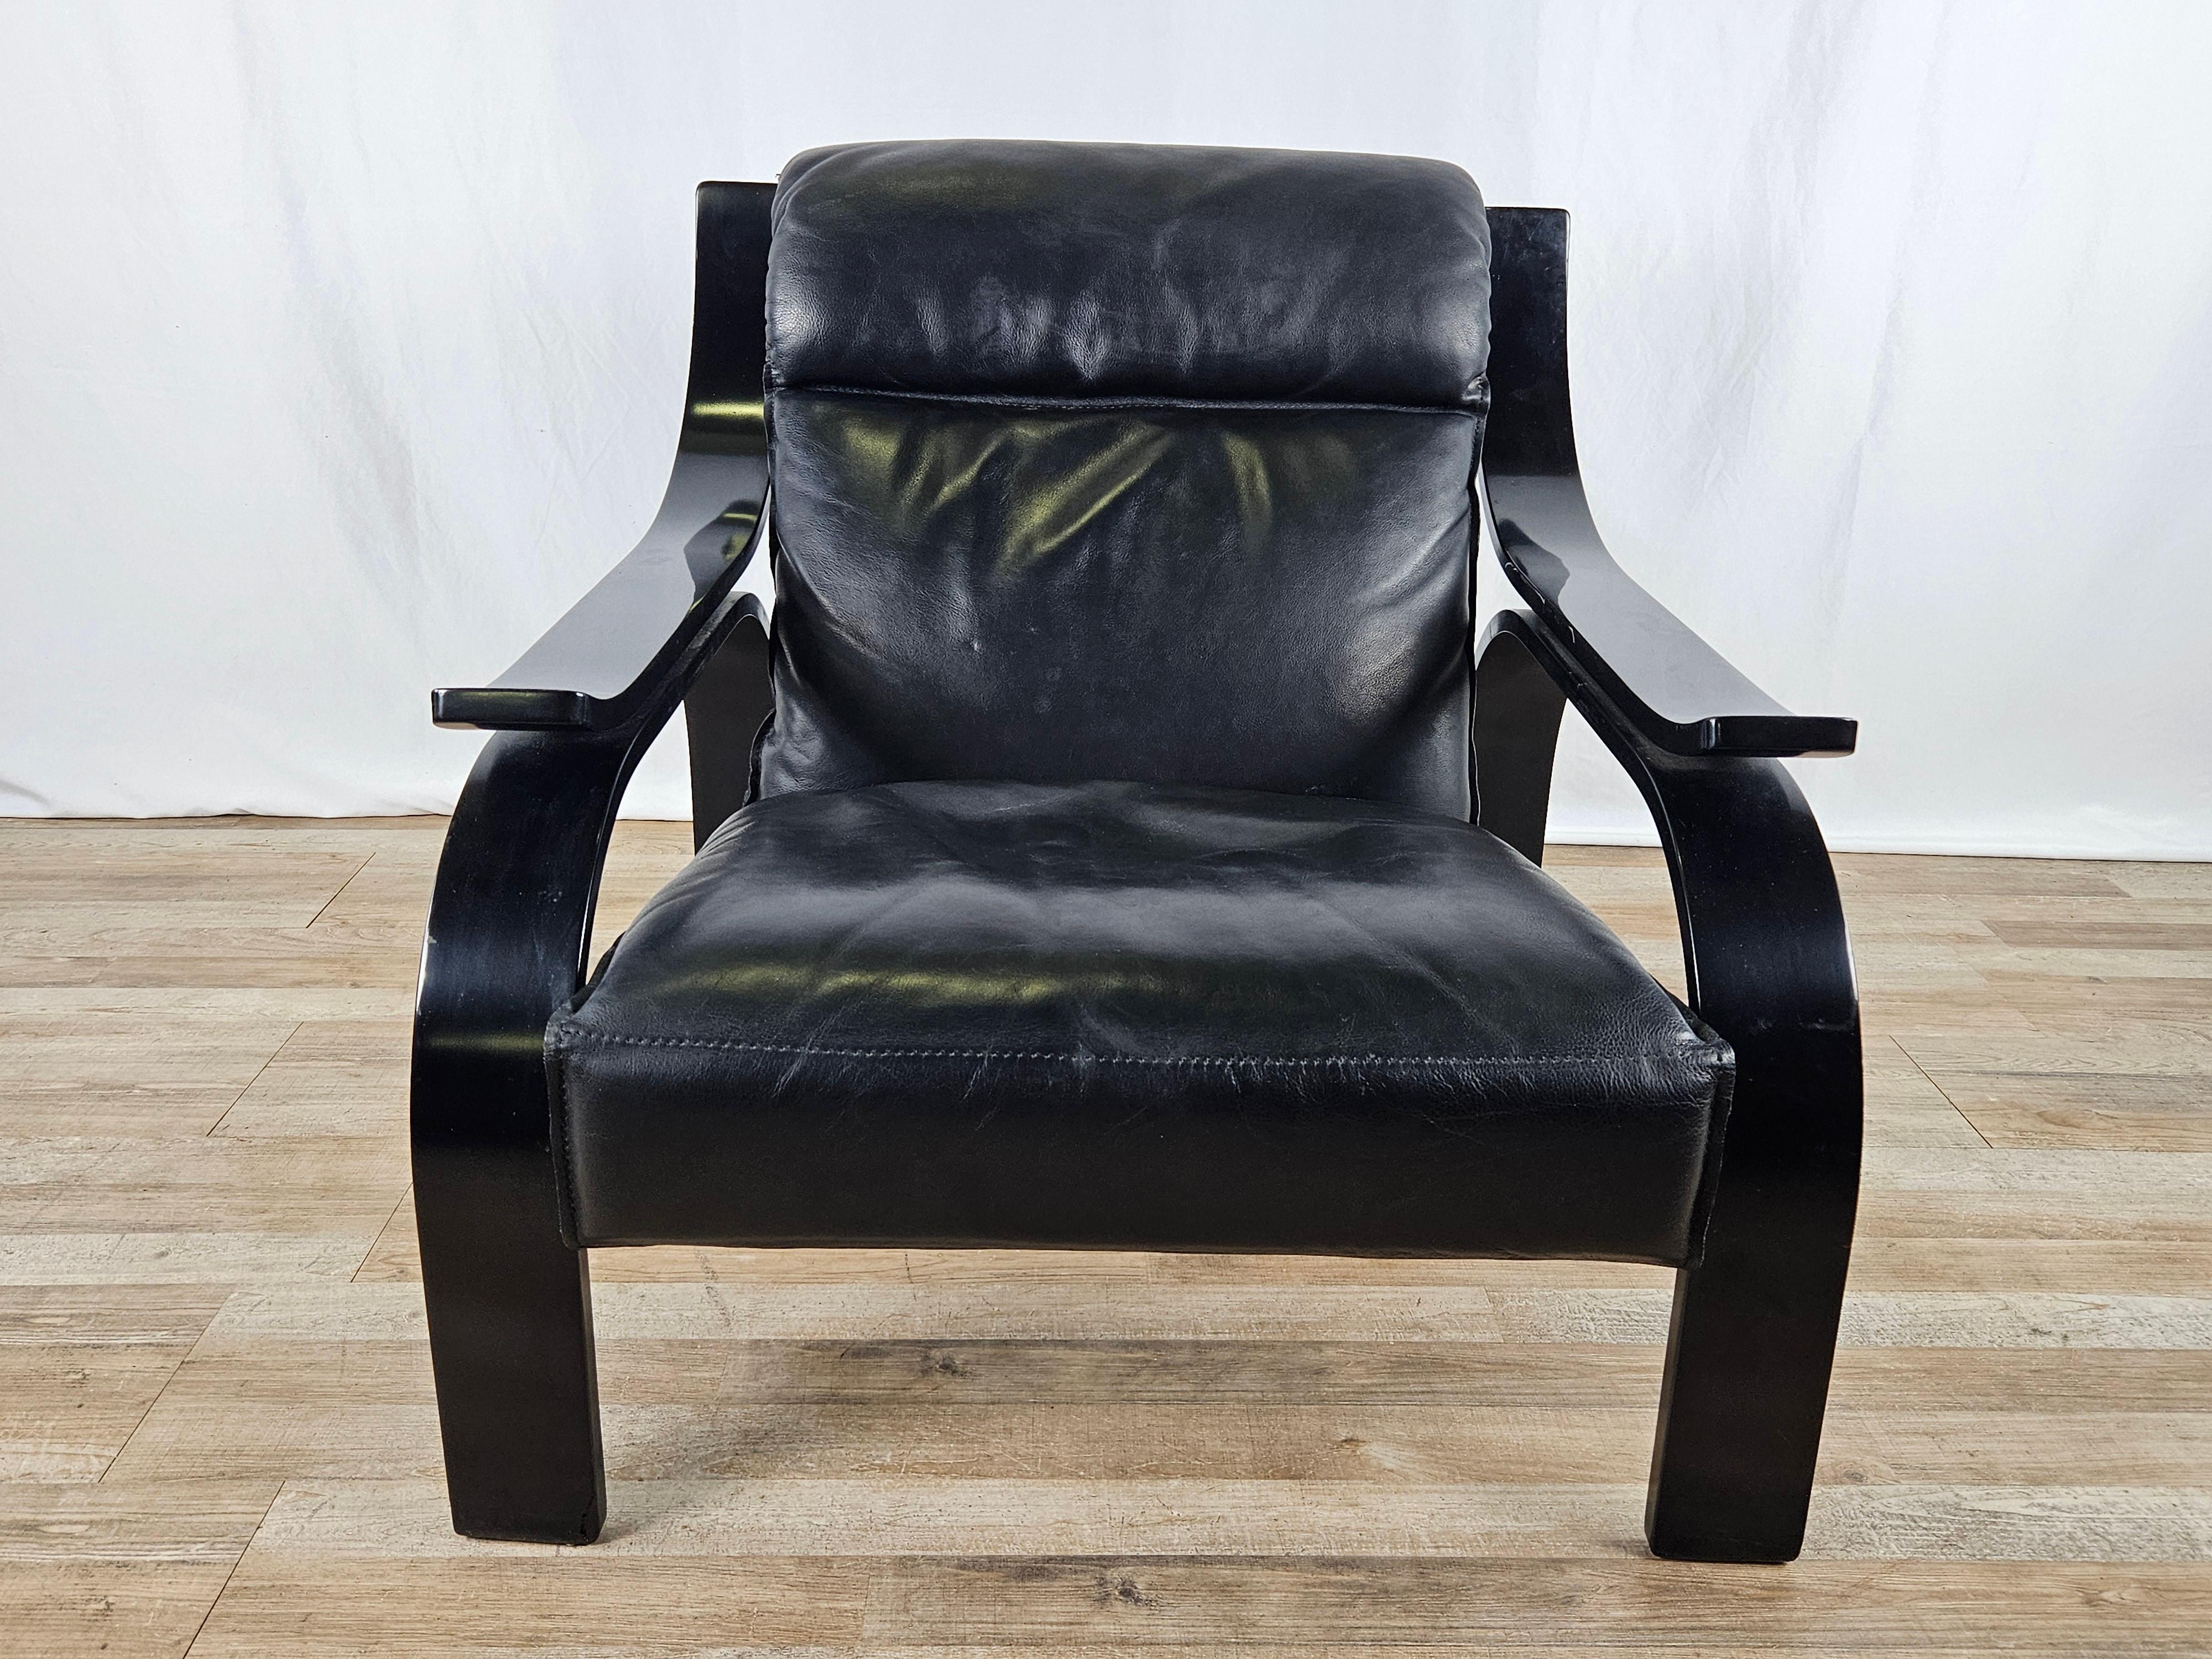 Icône du design italien des années 1960, ce fauteuil Woodline a été conçu par Marco Zanuso pour Arflex en 1964. Il est composé d'un contreplaqué laqué noir et d'une assise recouverte d'un cuir noir de haute qualité.

Un design élégant accentué par